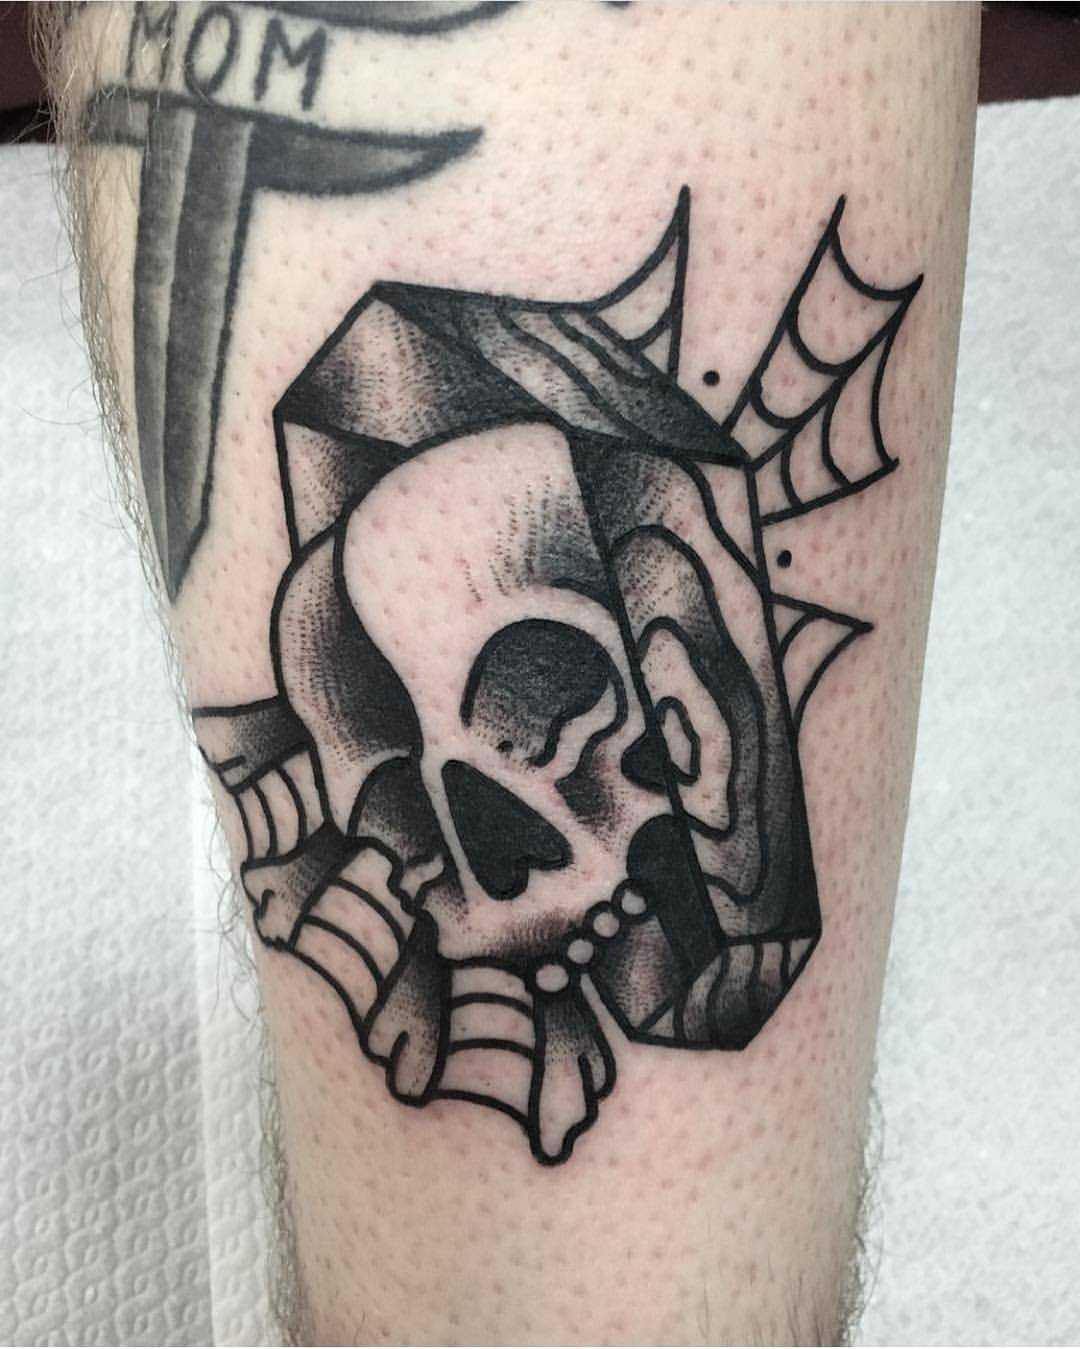 Skull and coffin tattoo by Jeroen Van Dijk